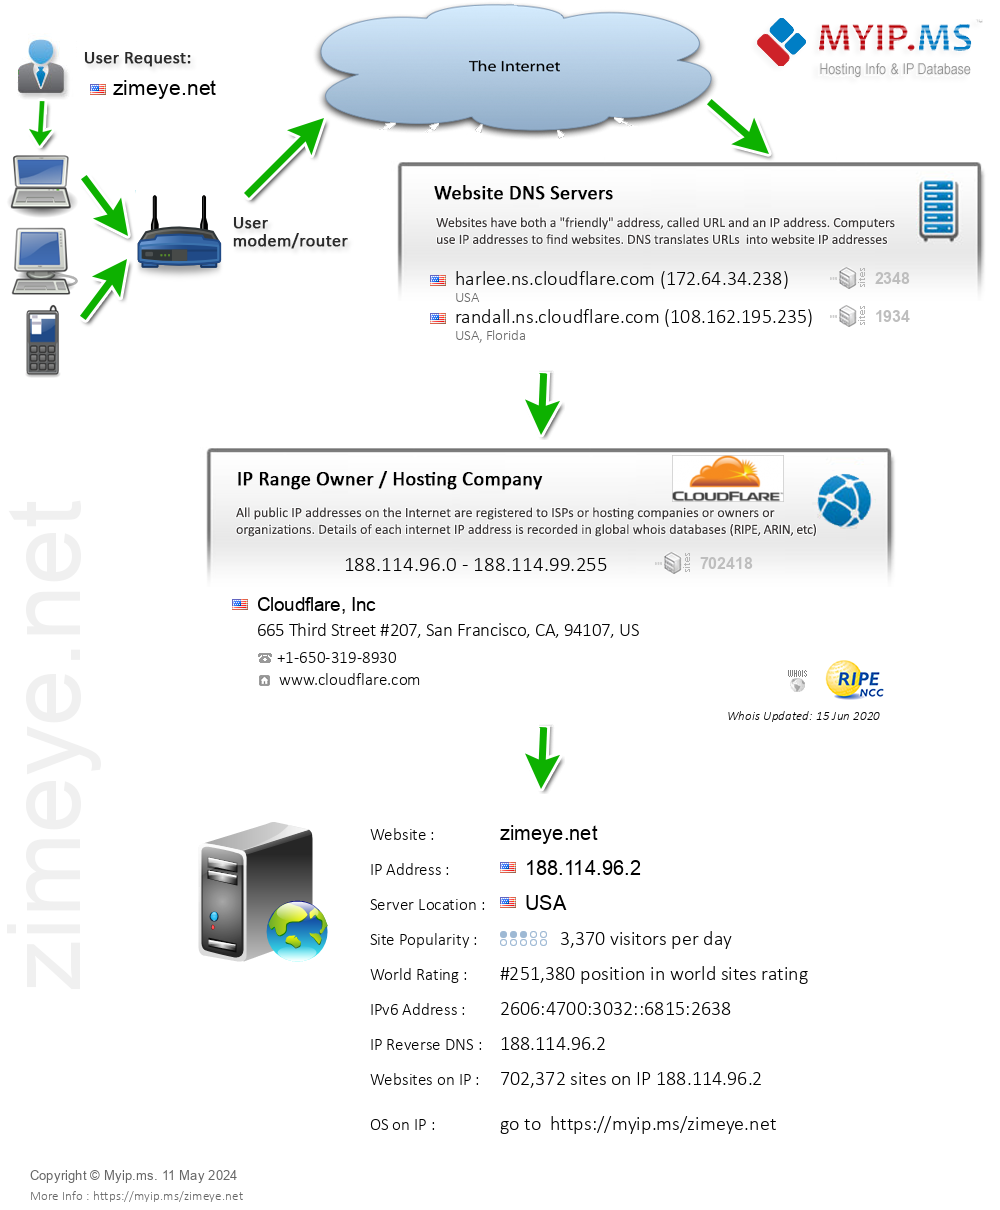 Zimeye.net - Website Hosting Visual IP Diagram